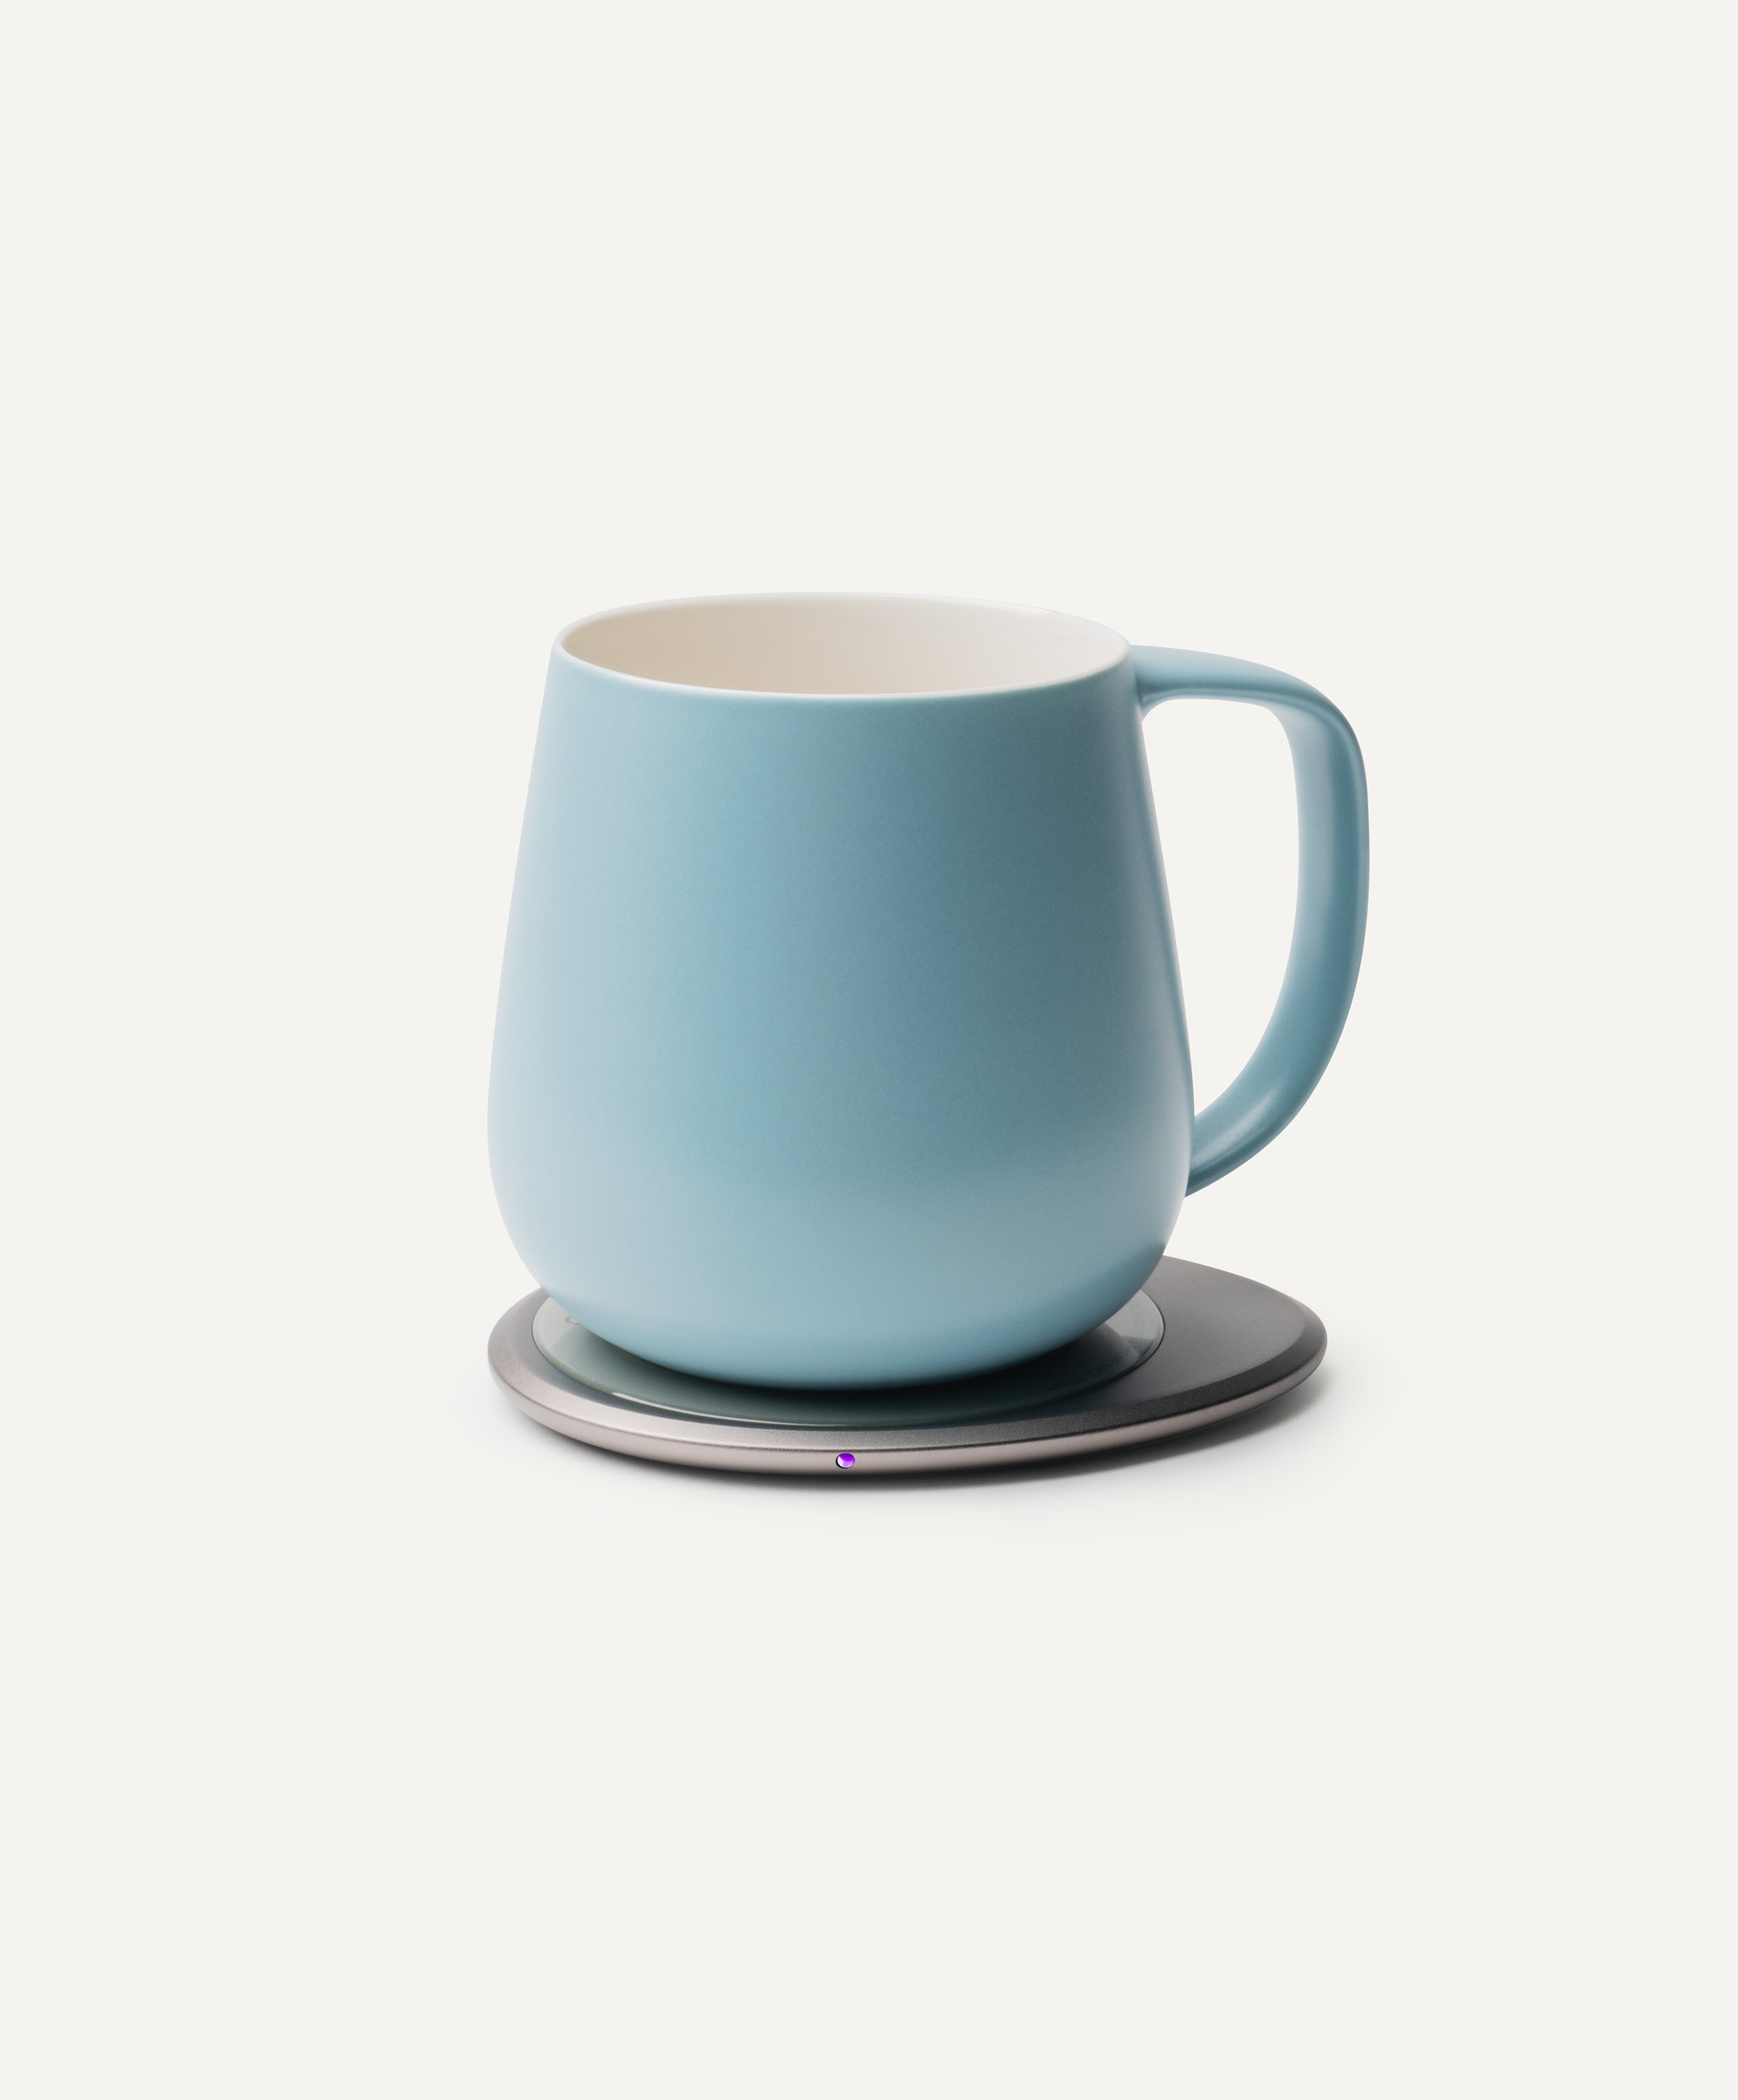 Ui+ Self-heating Mug Set - Moonmist Blue